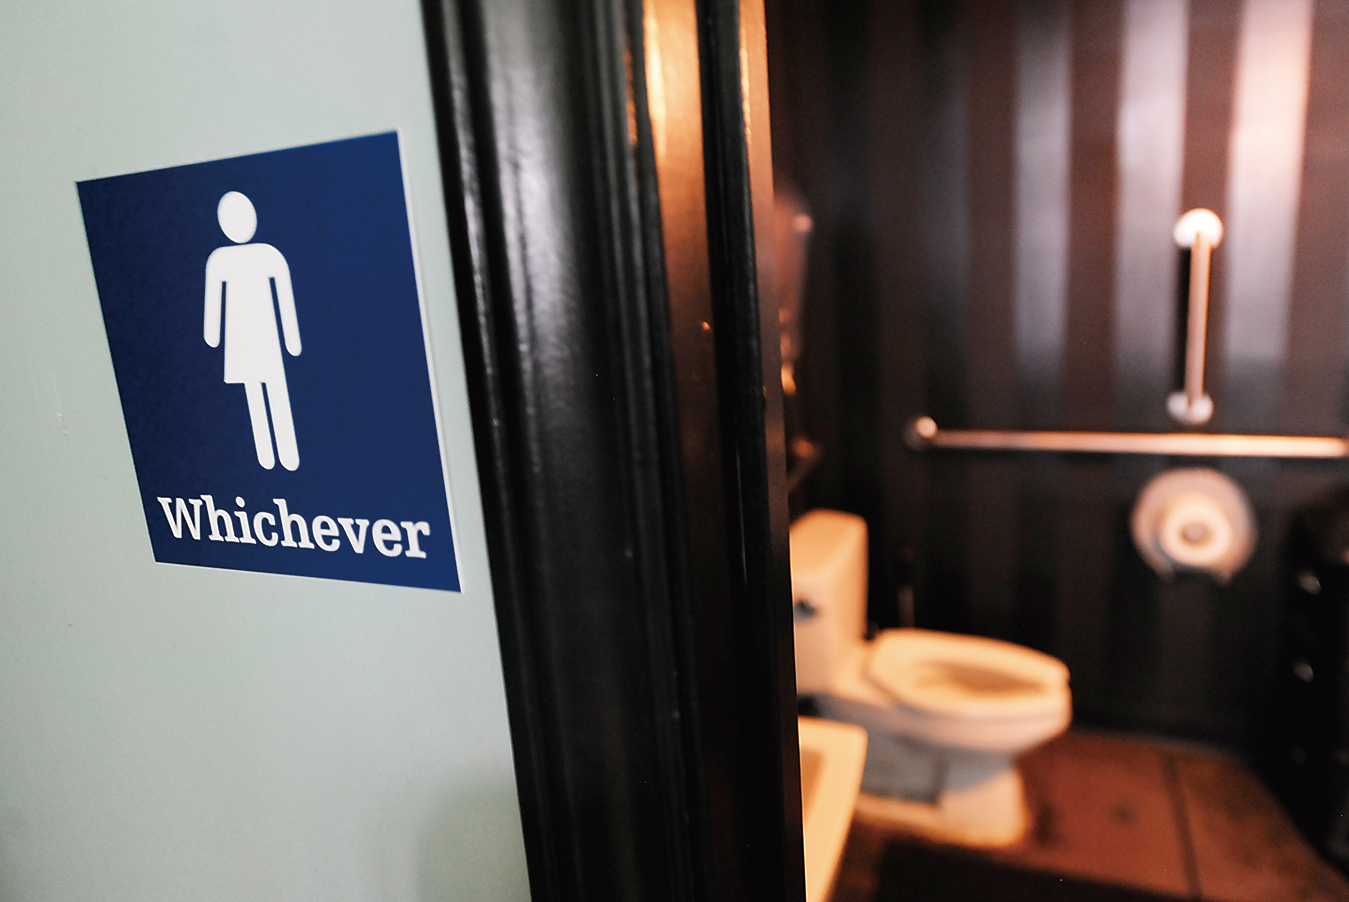 奧巴馬政府要求全美國公立學校必須允許變性學生自選廁所。圖為北卡州的一個性別中性的廁所。((Photo by Sara D. Davis/Getty Images)